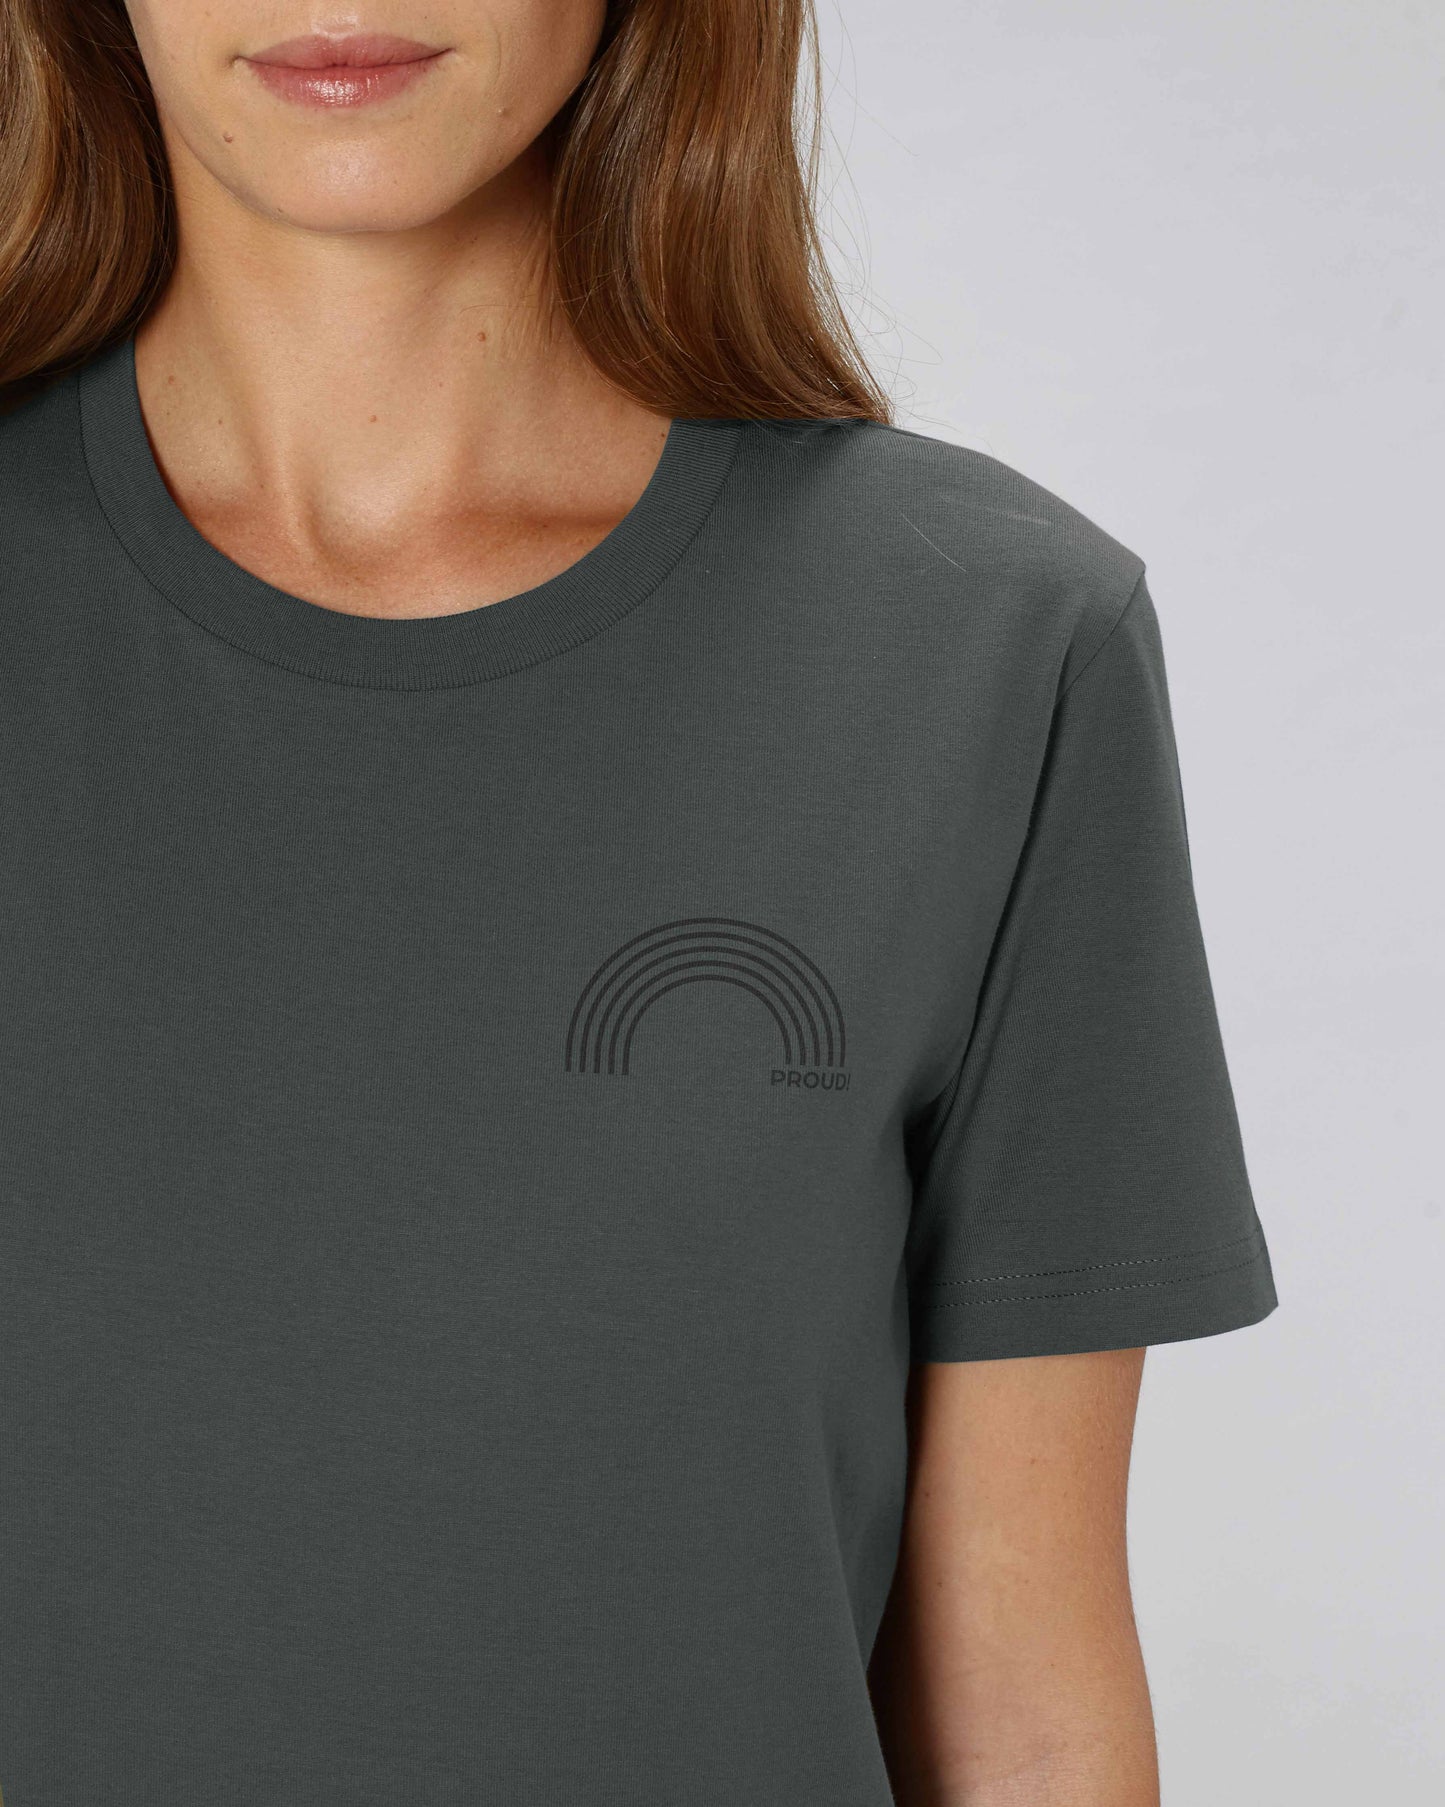 EINHORST® unisex Organic Shirt in "Anthracite" mit dem Motiv "proud Regenbogen" in der Kombination schwarzer Regenbogen mit schwarzer Schrift, Bild von weiblicher Person mit Shirt